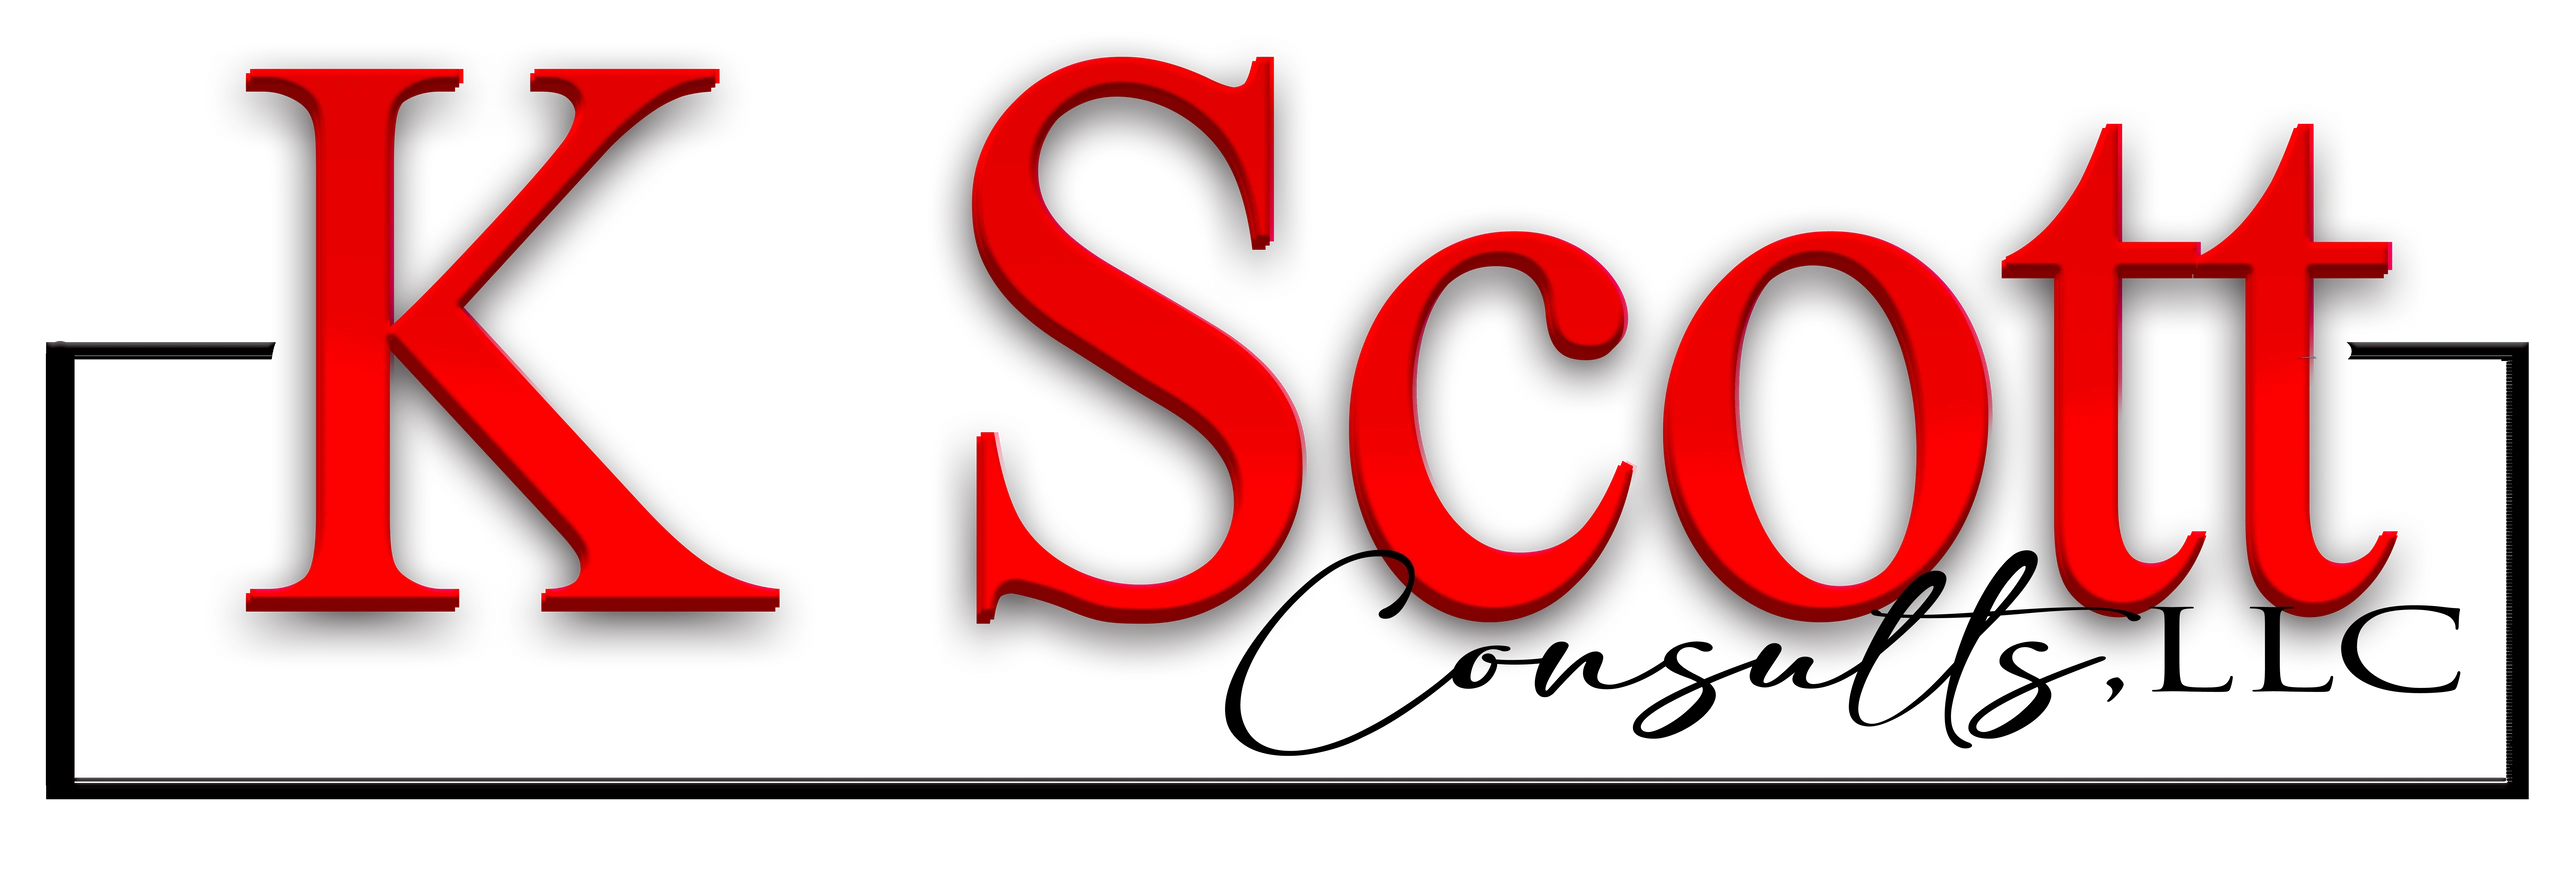 Scott Website